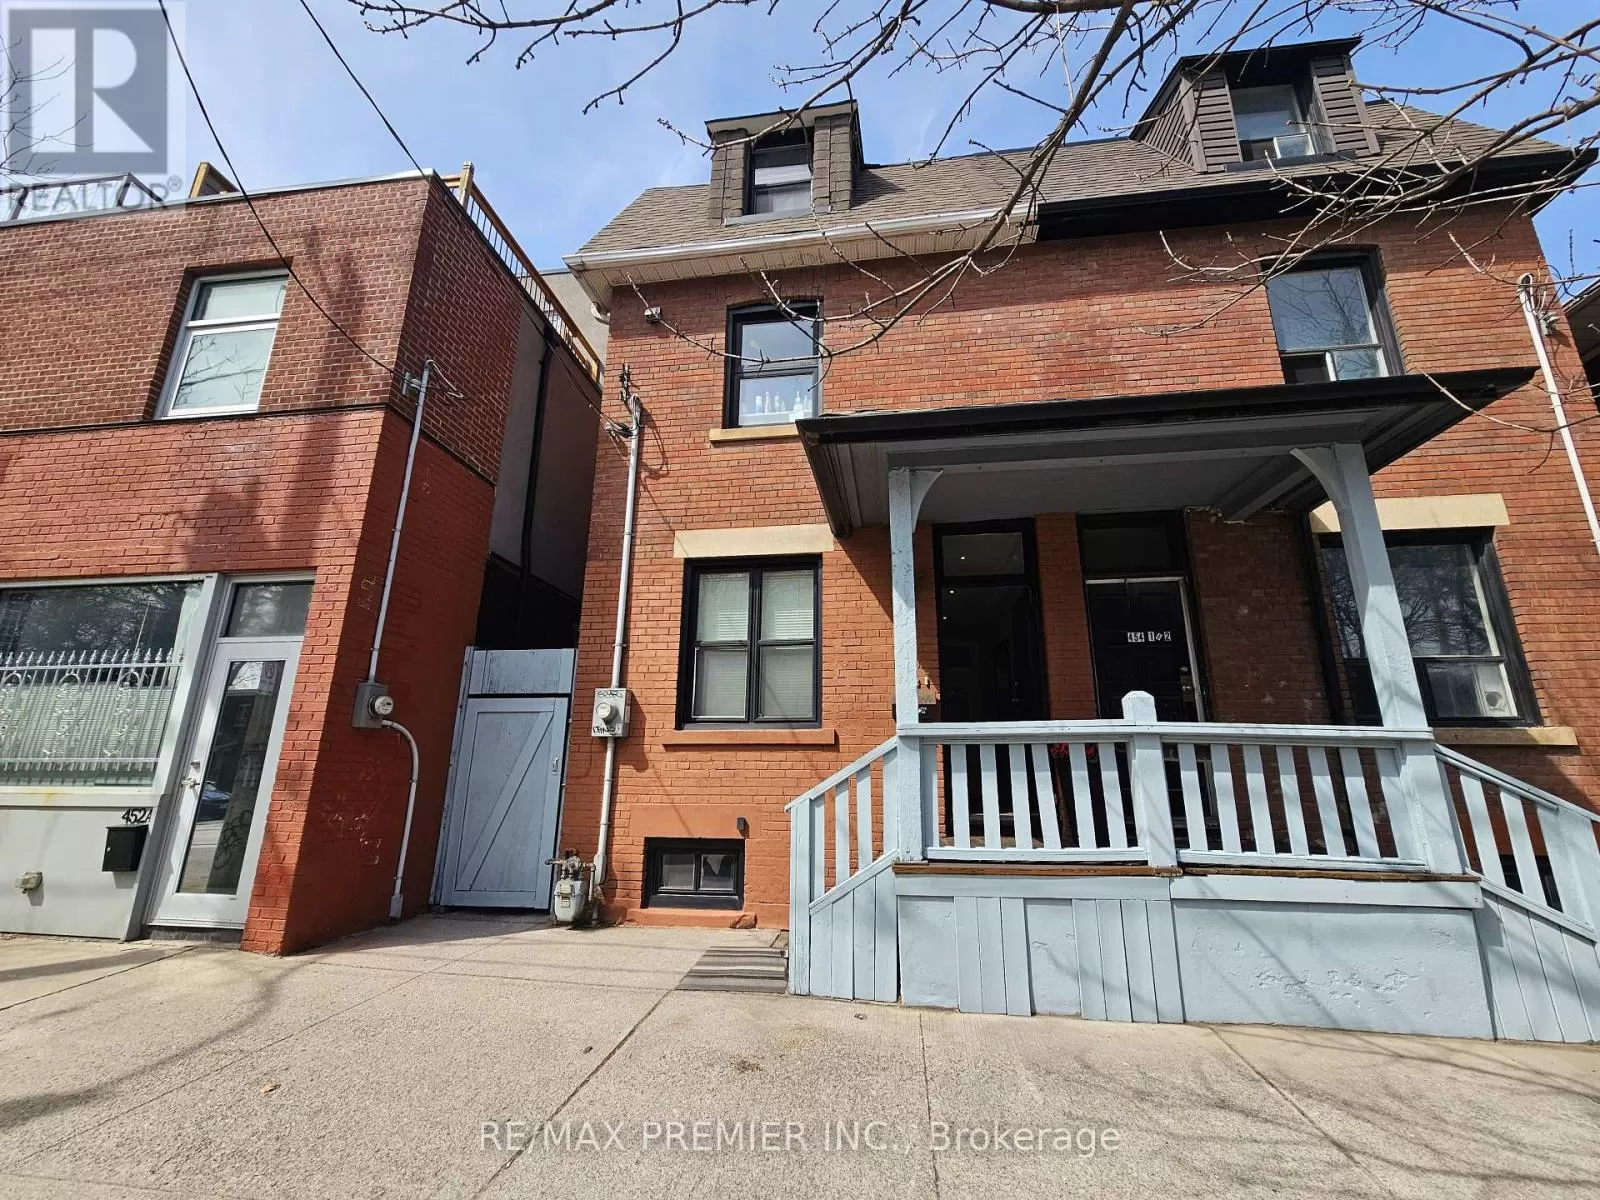 House for rent: 454 Gerrard St E, Toronto, Ontario M5A 2H2